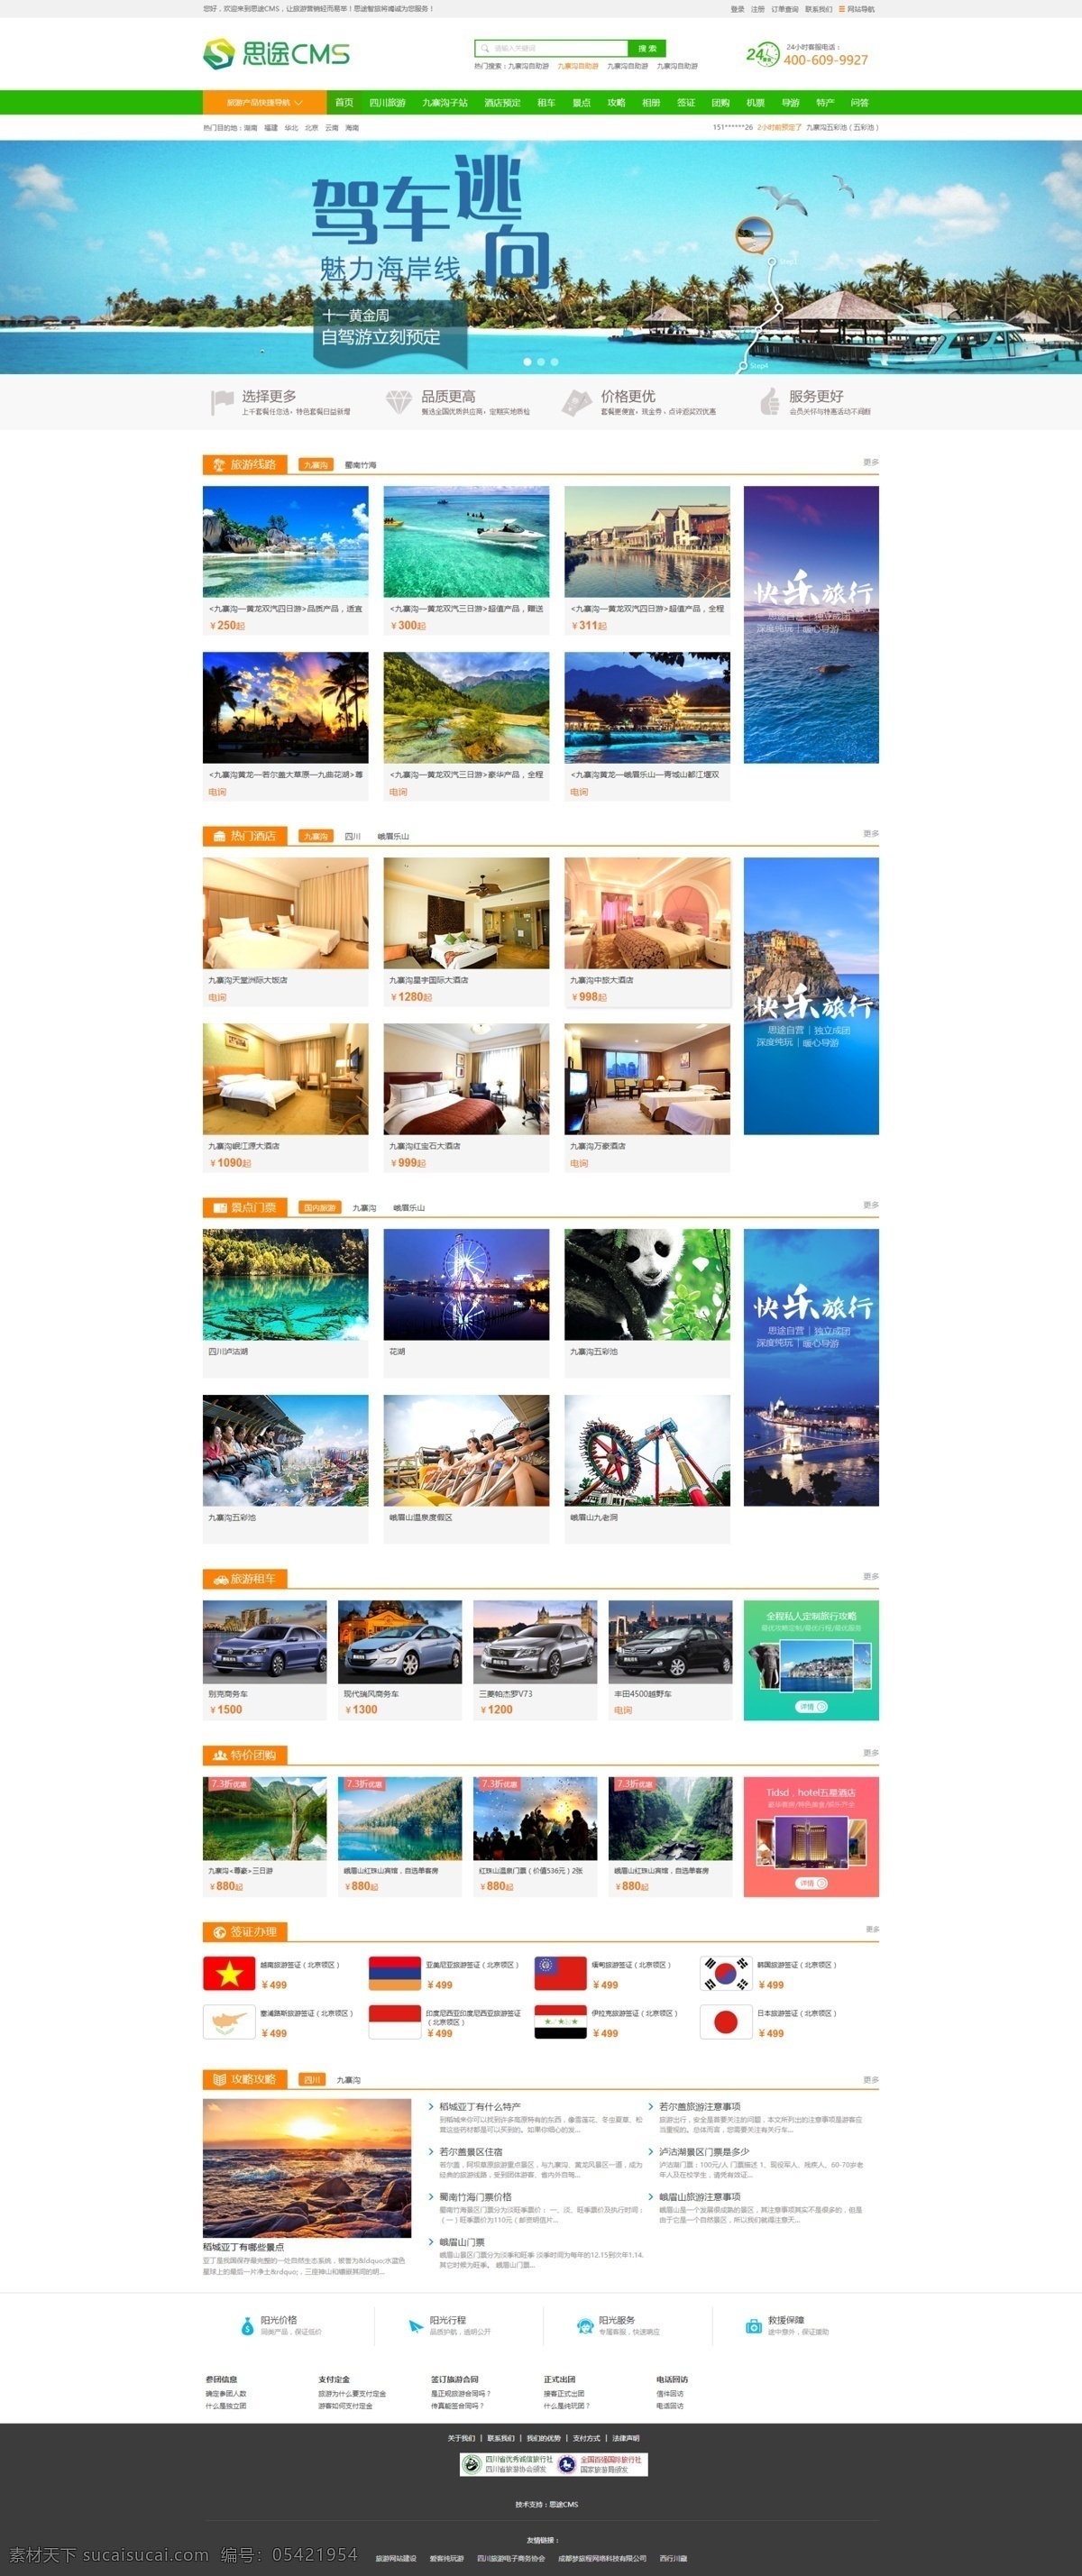 旅游 网站建设 模板 思 途 cms 网站制作 网站设计 白色